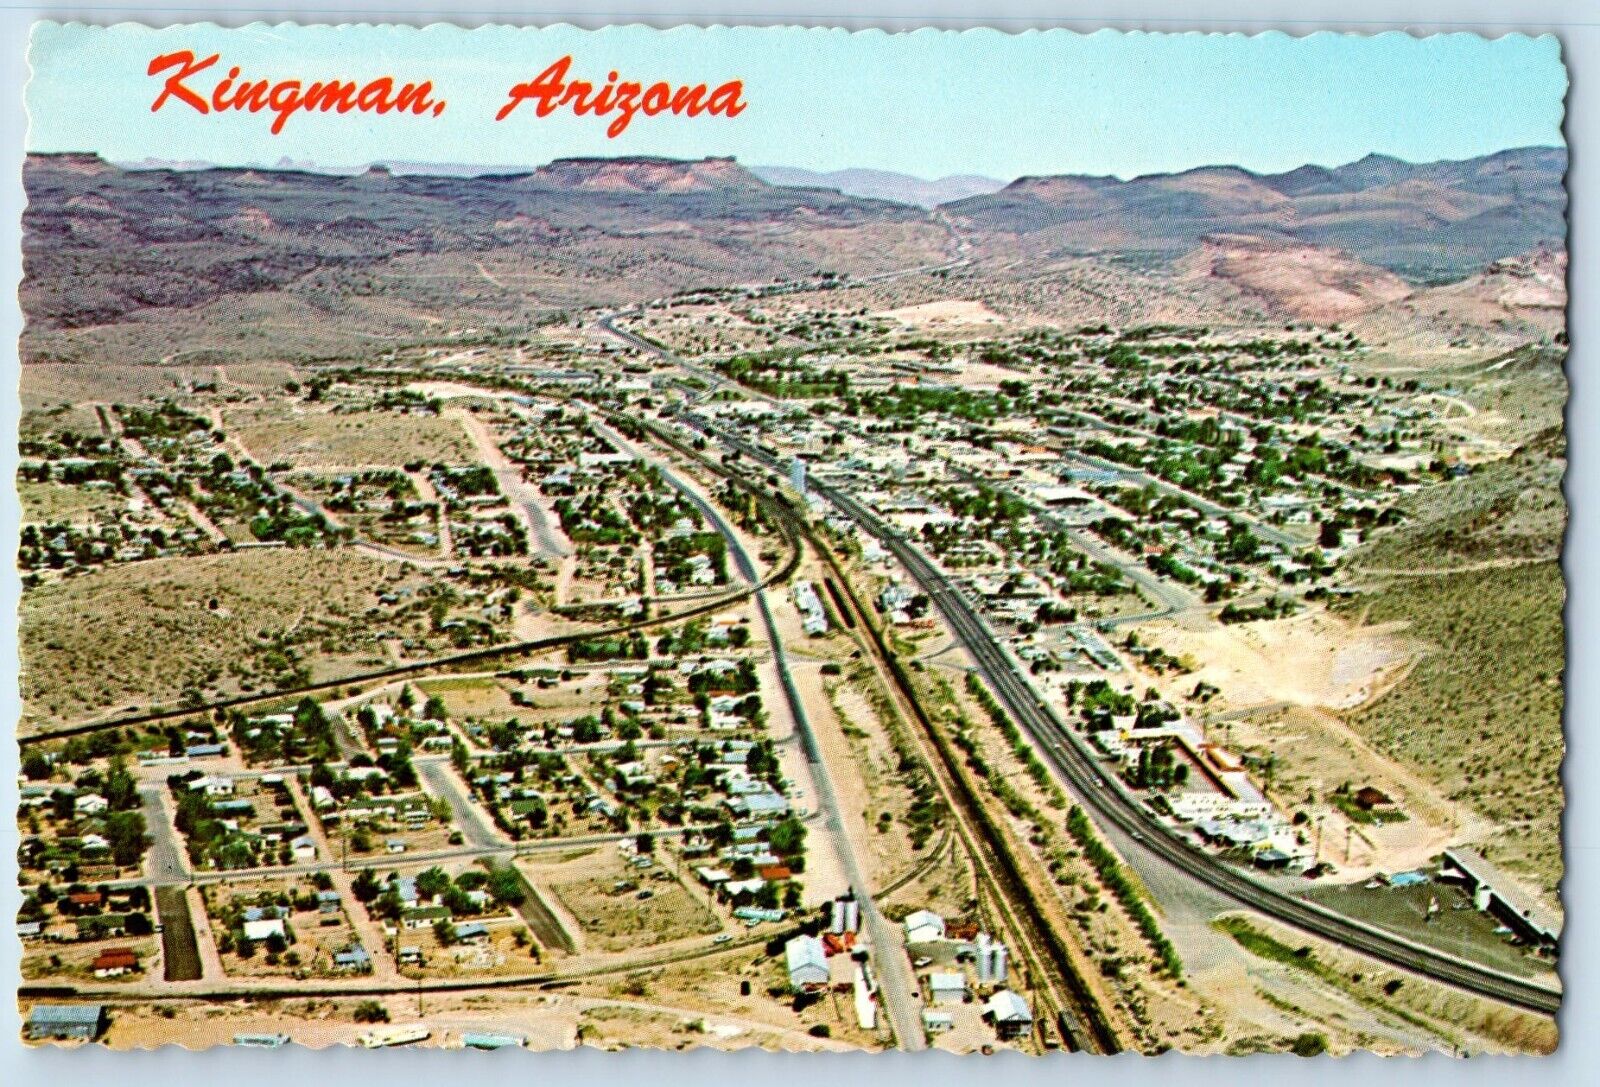 Kingman Arizona AZ Postcard Aerial View Kingman City Street Mountain Route 66